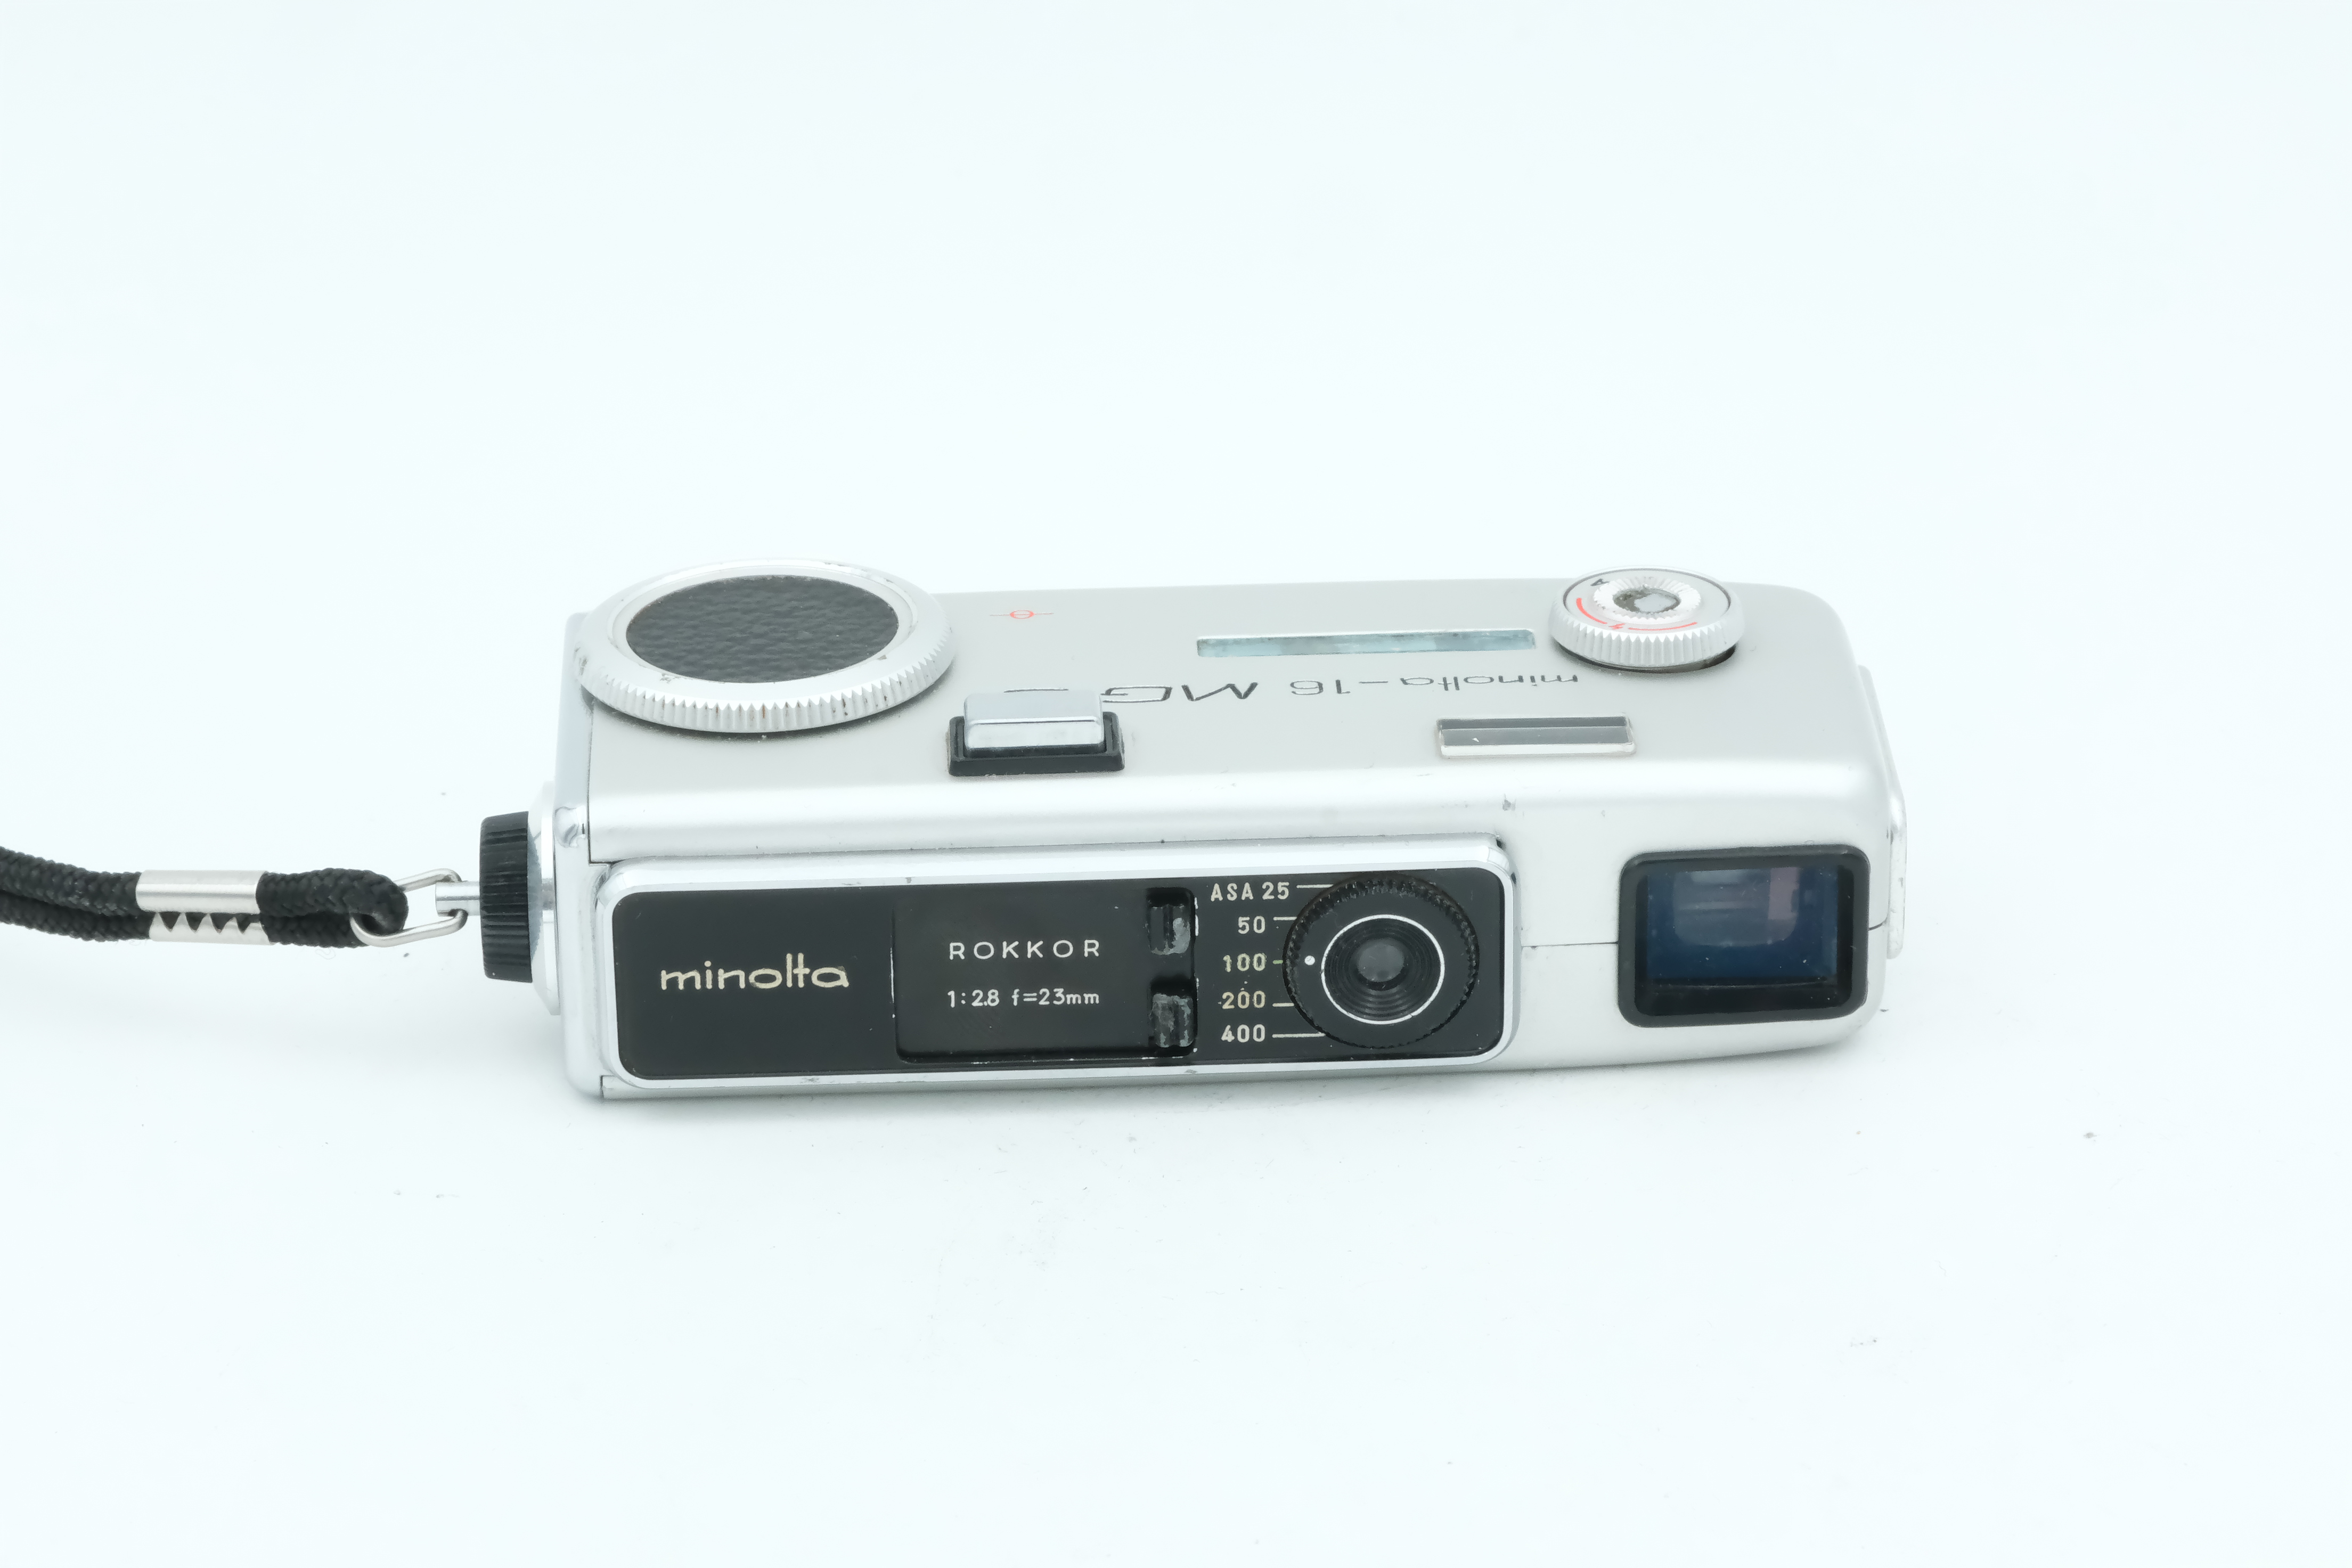 Minolta -16 MG-S, Rokkor 23mm 2,8 16mm  8x11 Bild 01